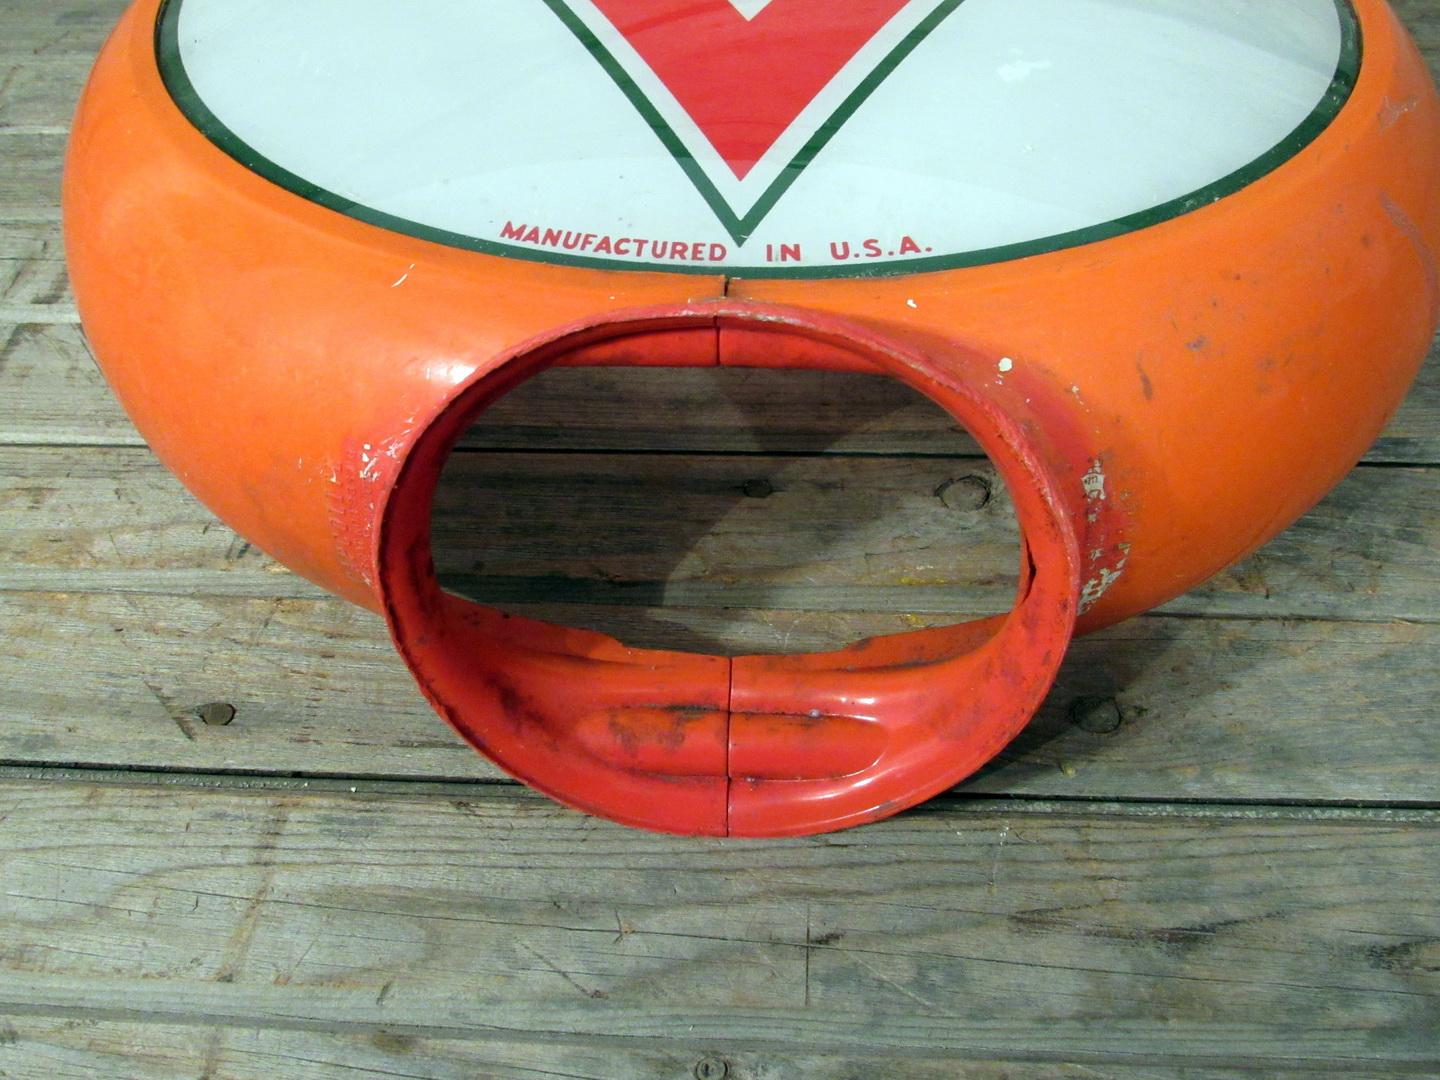 Vintage Conoco Gas Globe